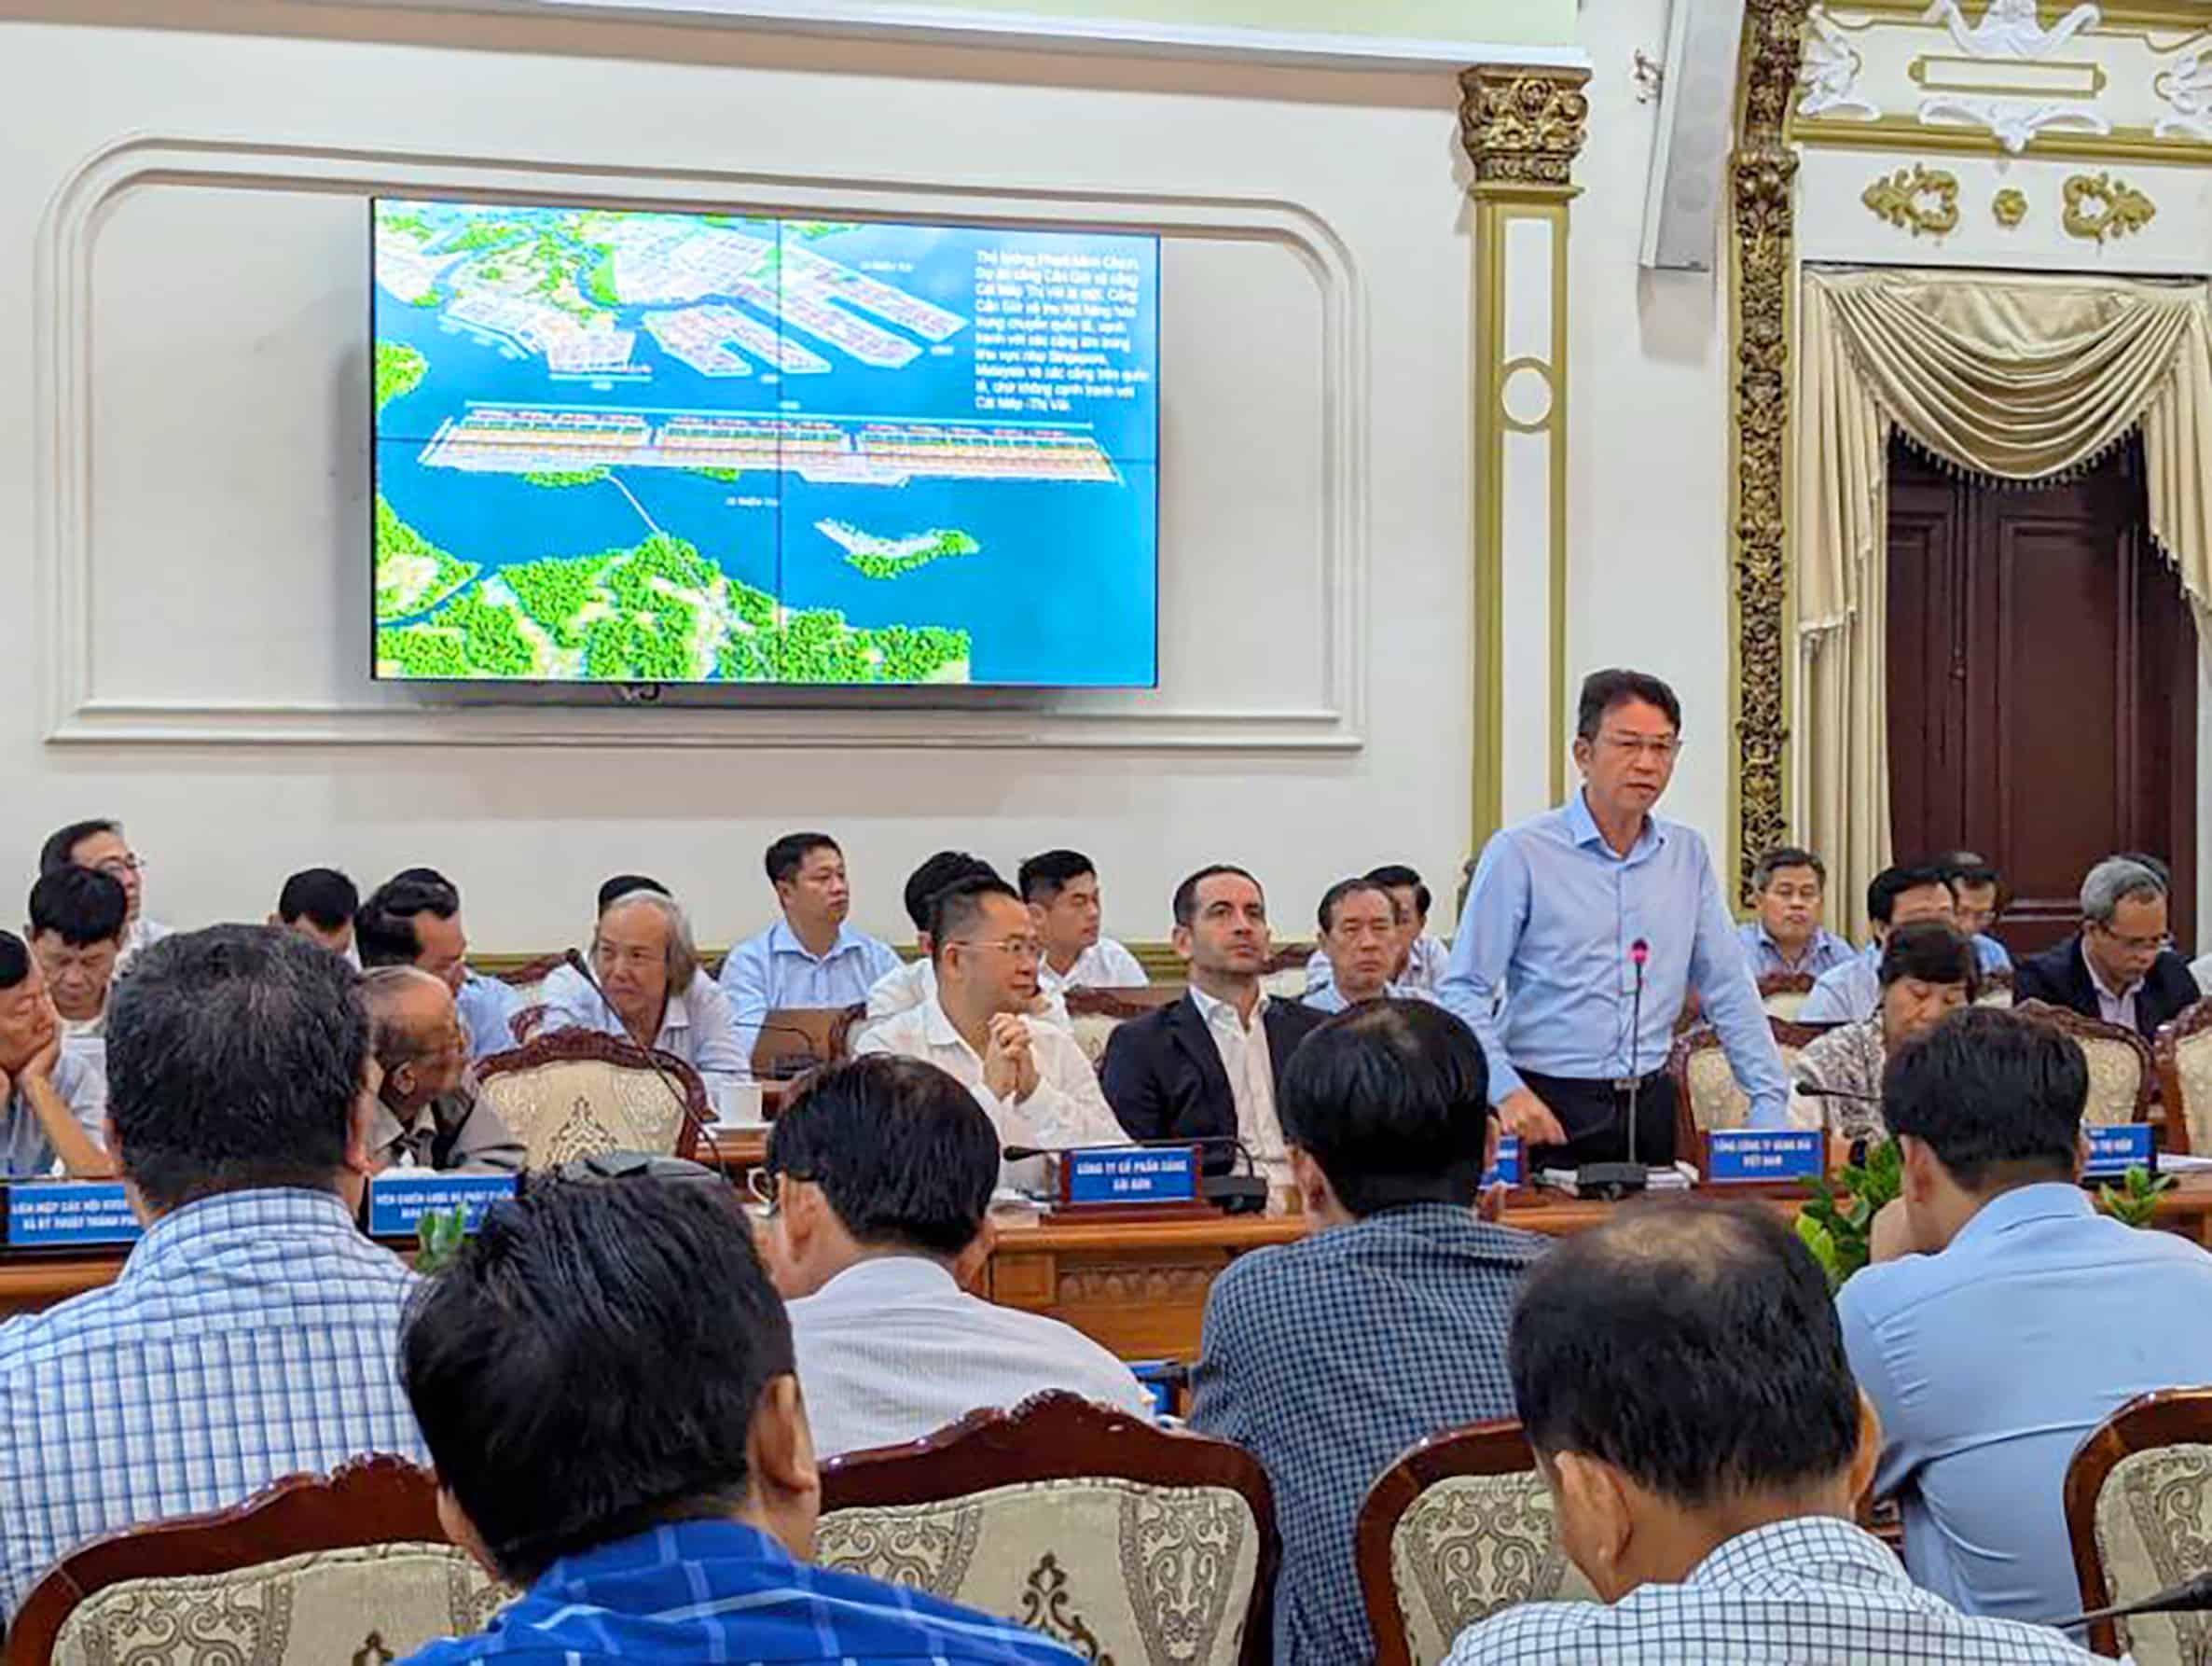 Ông Lê Anh Sơn - Chủ tịch HĐQT VIMC trình bày ý kiến tại hội nghị